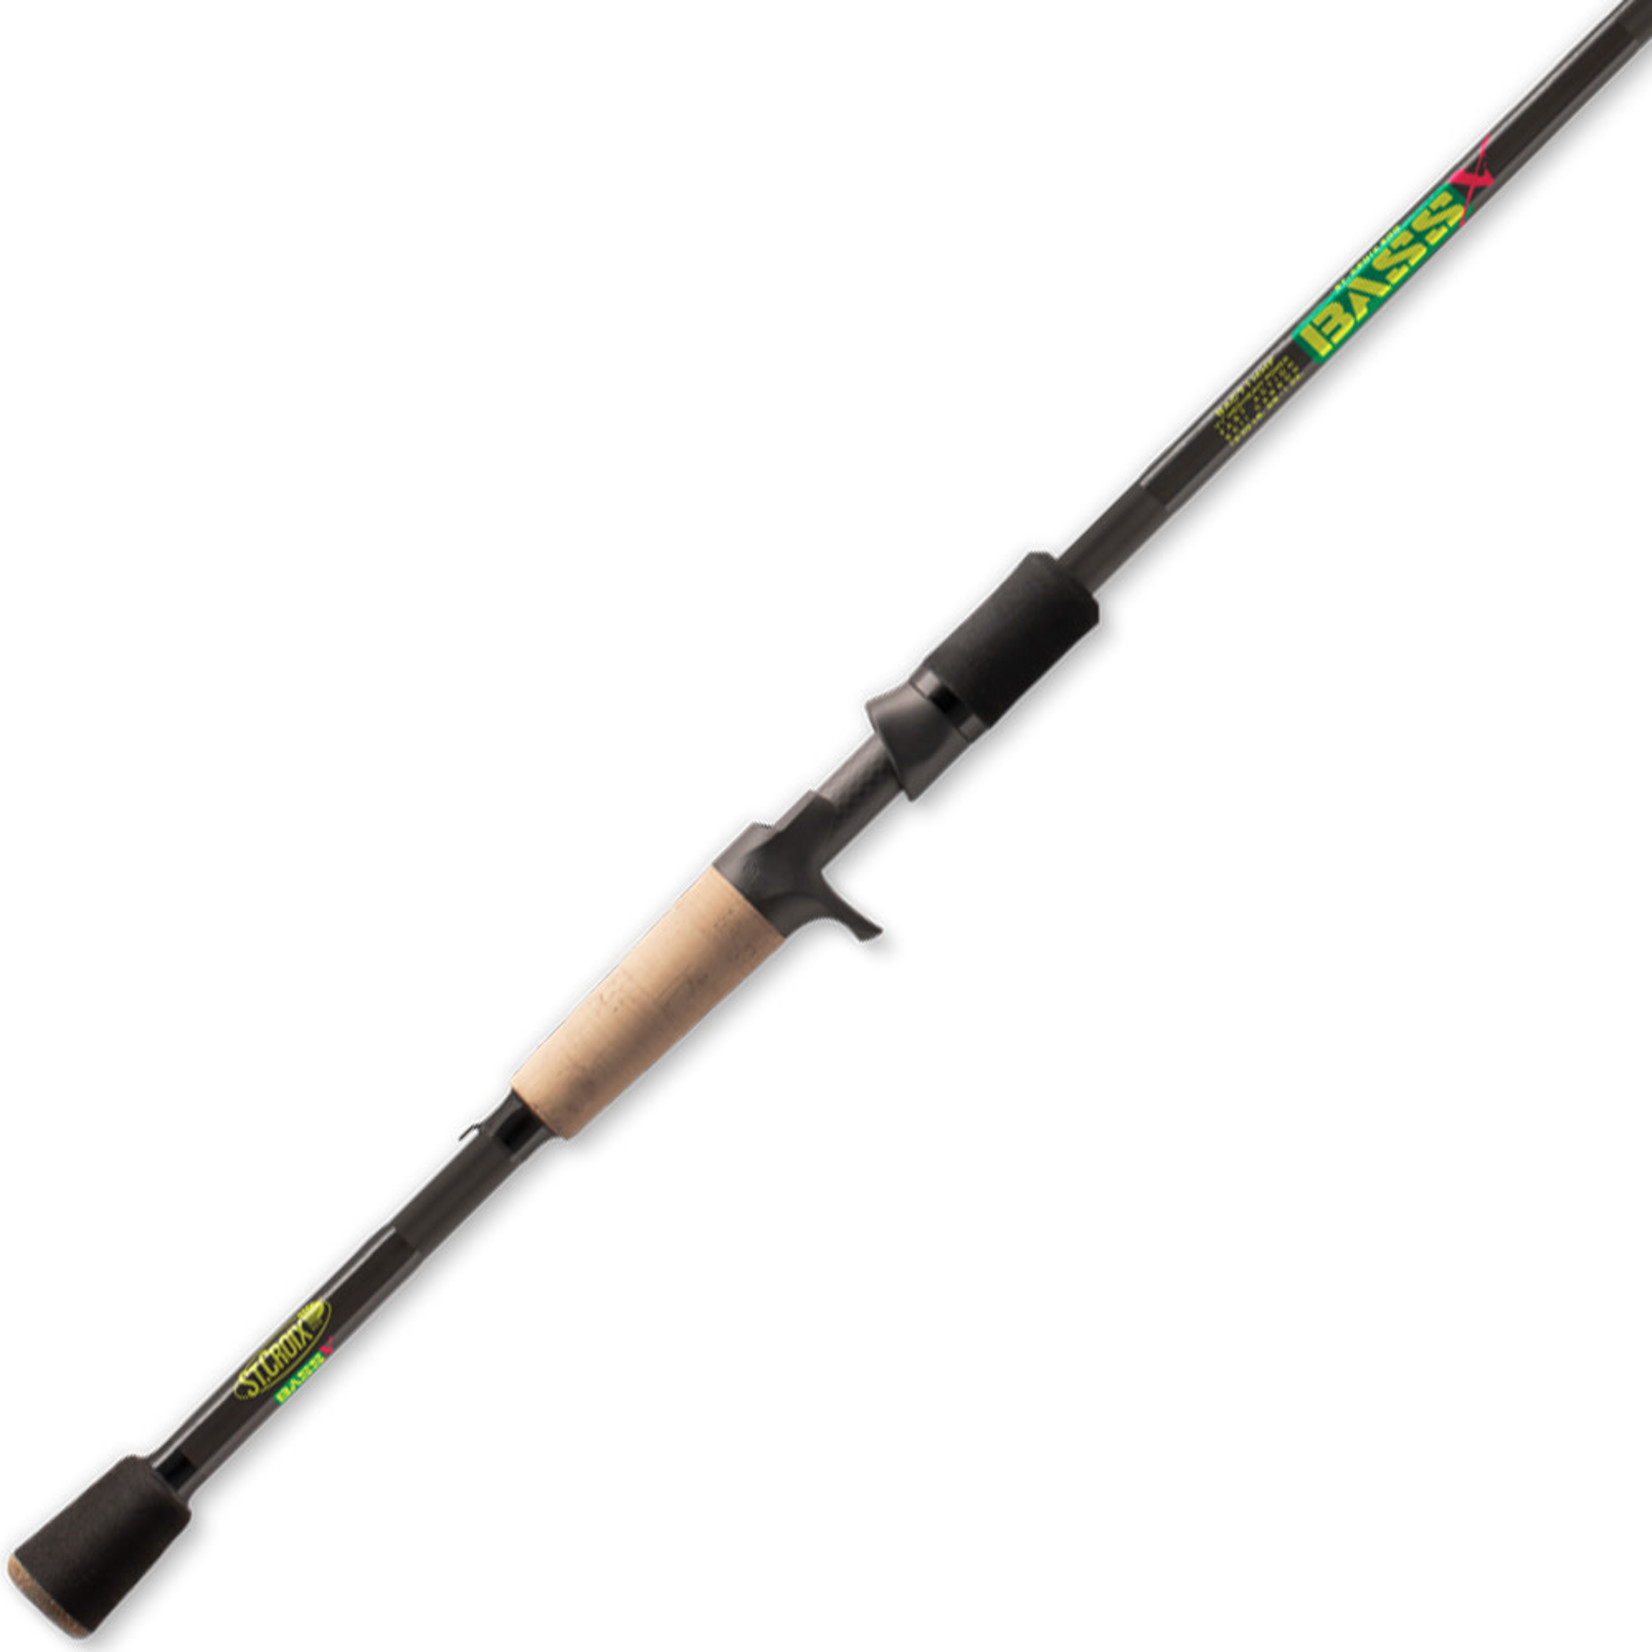 St. Croix St. Croix Bass X Casting Rod